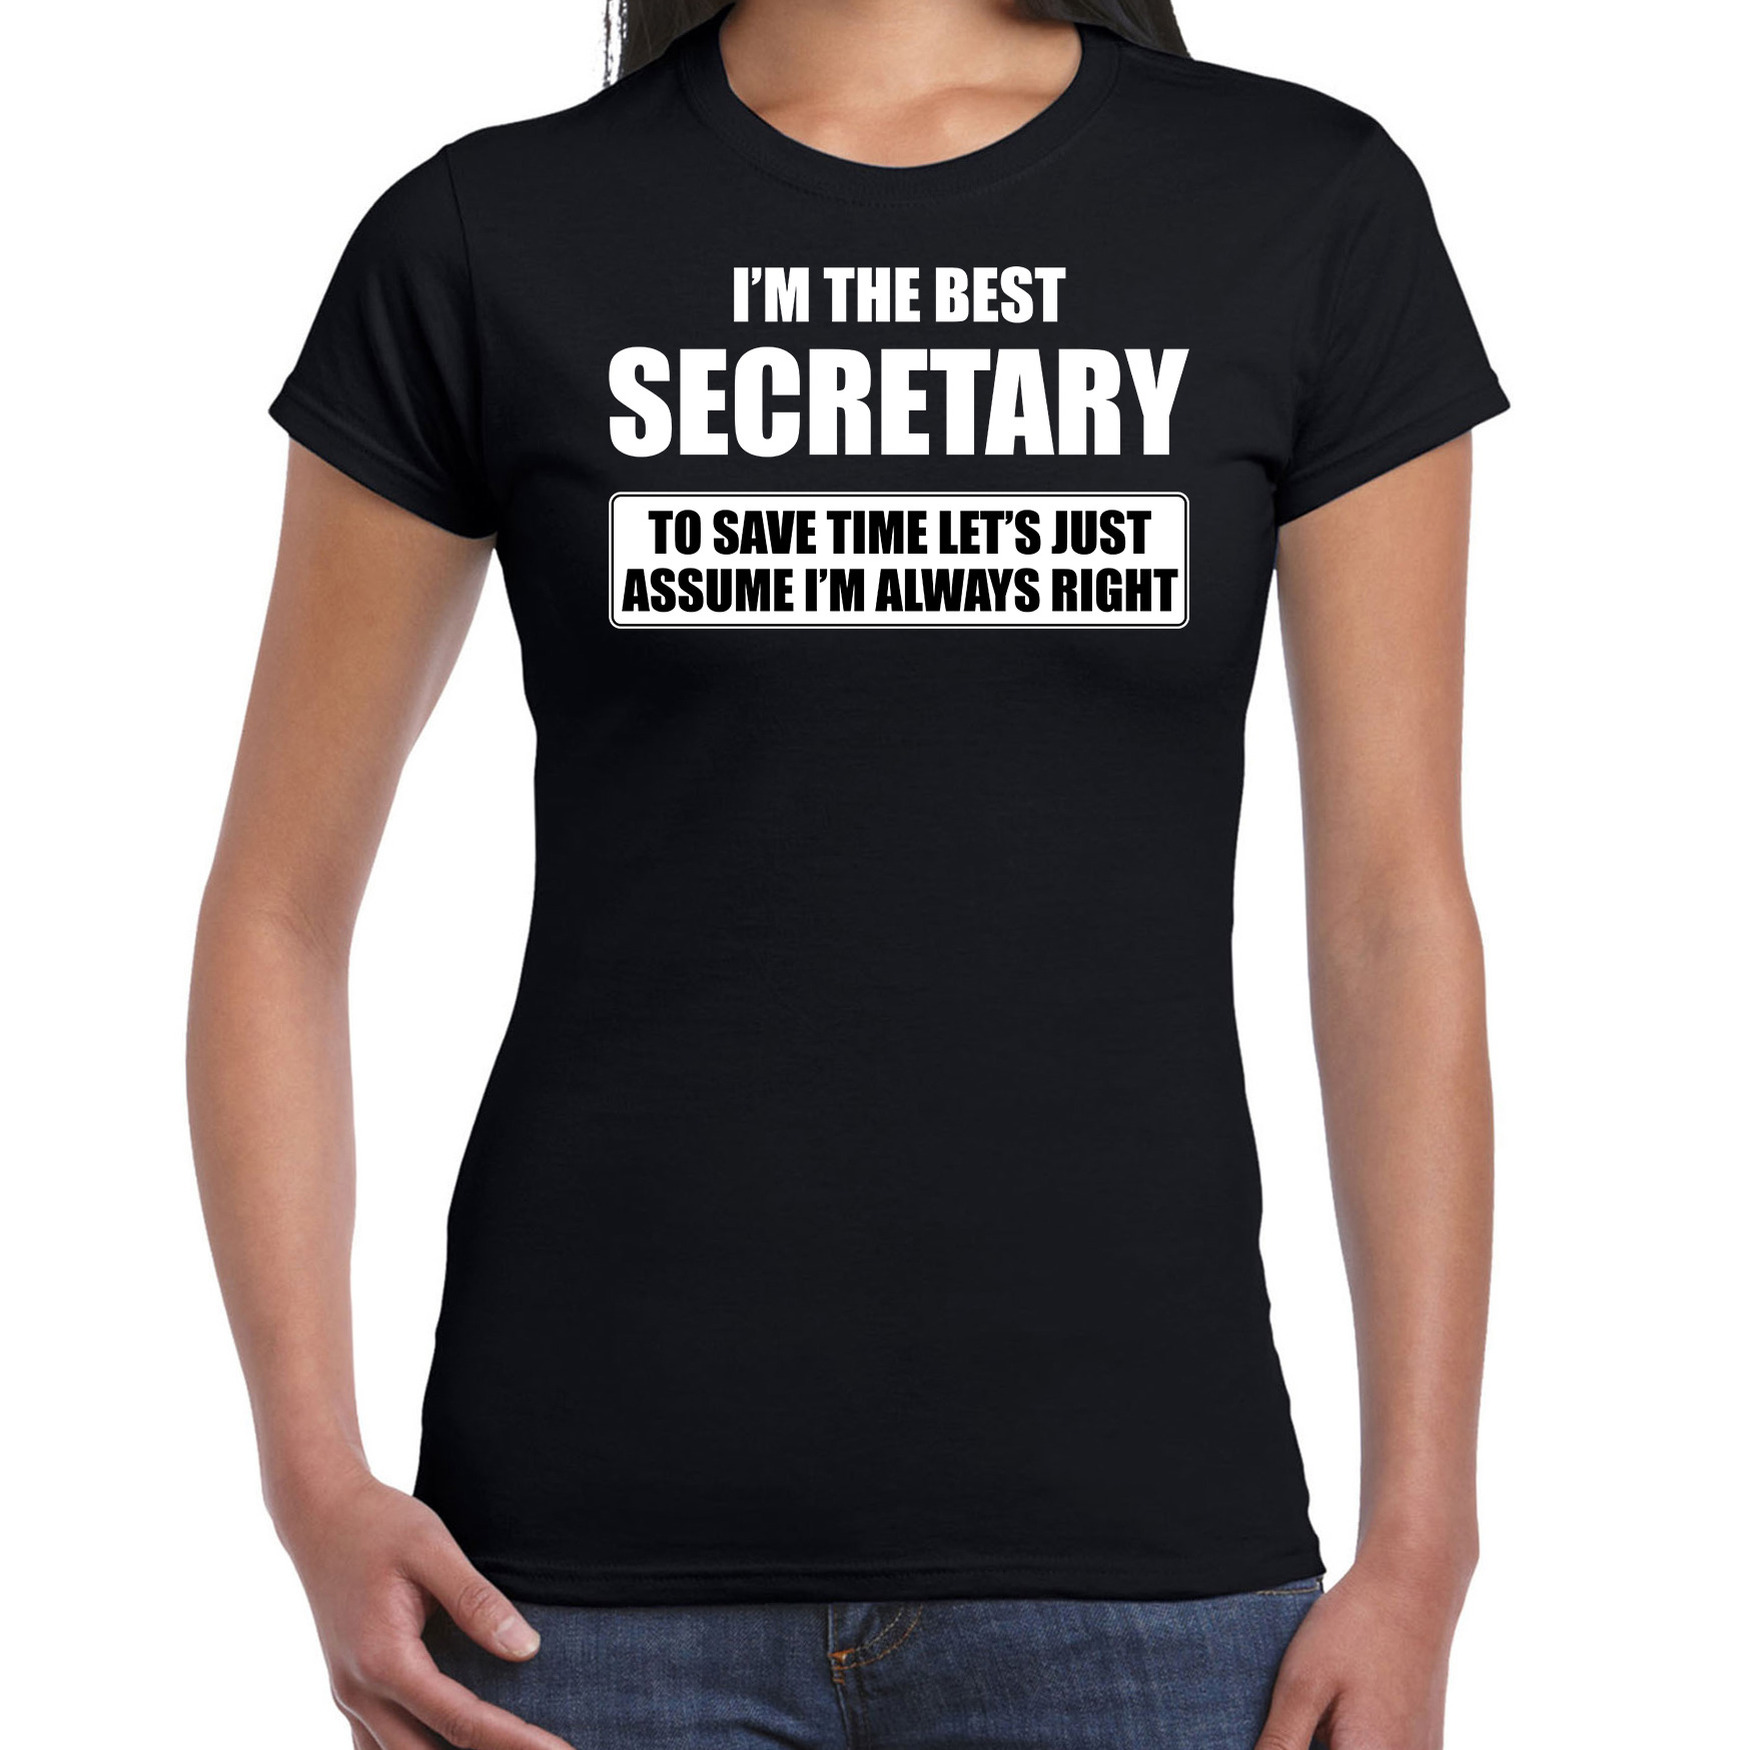 I'm the best secretary t-shirt zwart dames De beste secretaresse cadeau